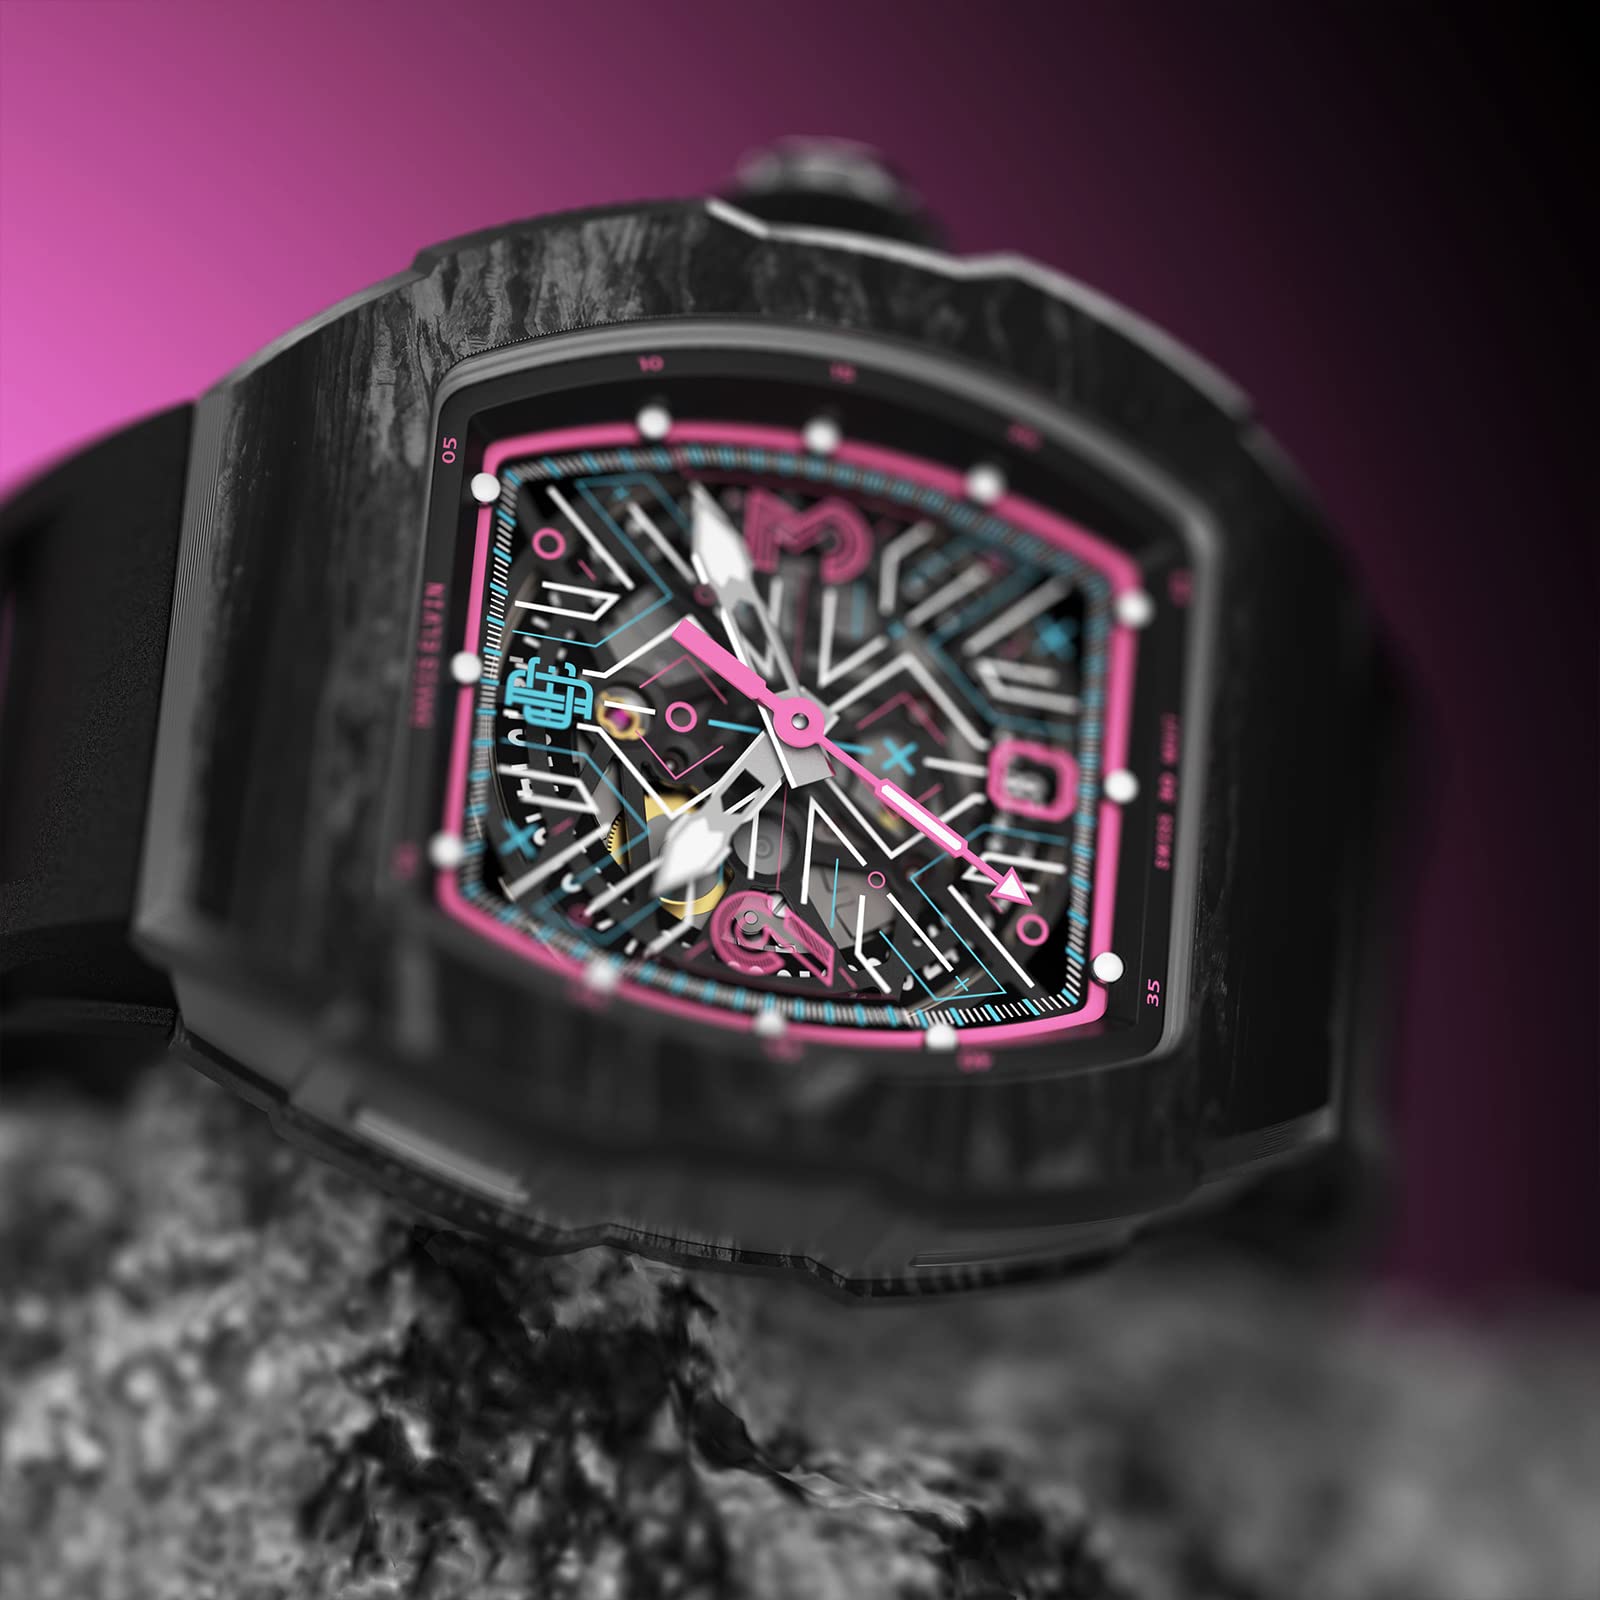 DAVIS ELVIN Men's Wristwatch Global Popular Original Birthday Gift Surprise for Men Tonneau Design Gentleman Watch Swiss Automatic Movement Mechanical Watch Carbon Fiber Watch-DR05-SPACE